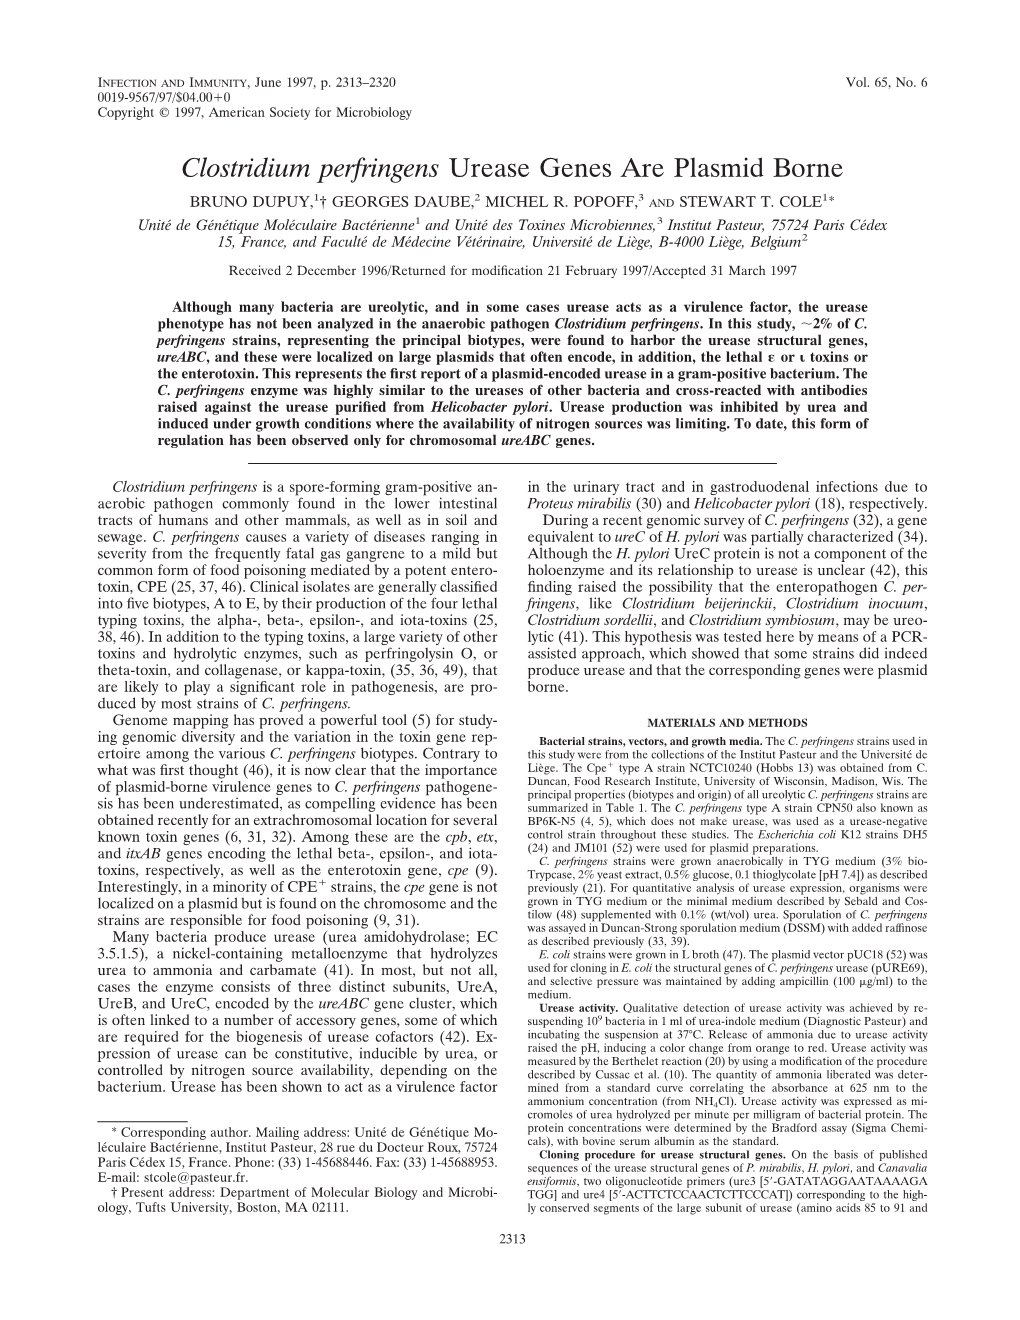 Clostridium Perfringens Urease Genes Are Plasmid Borne